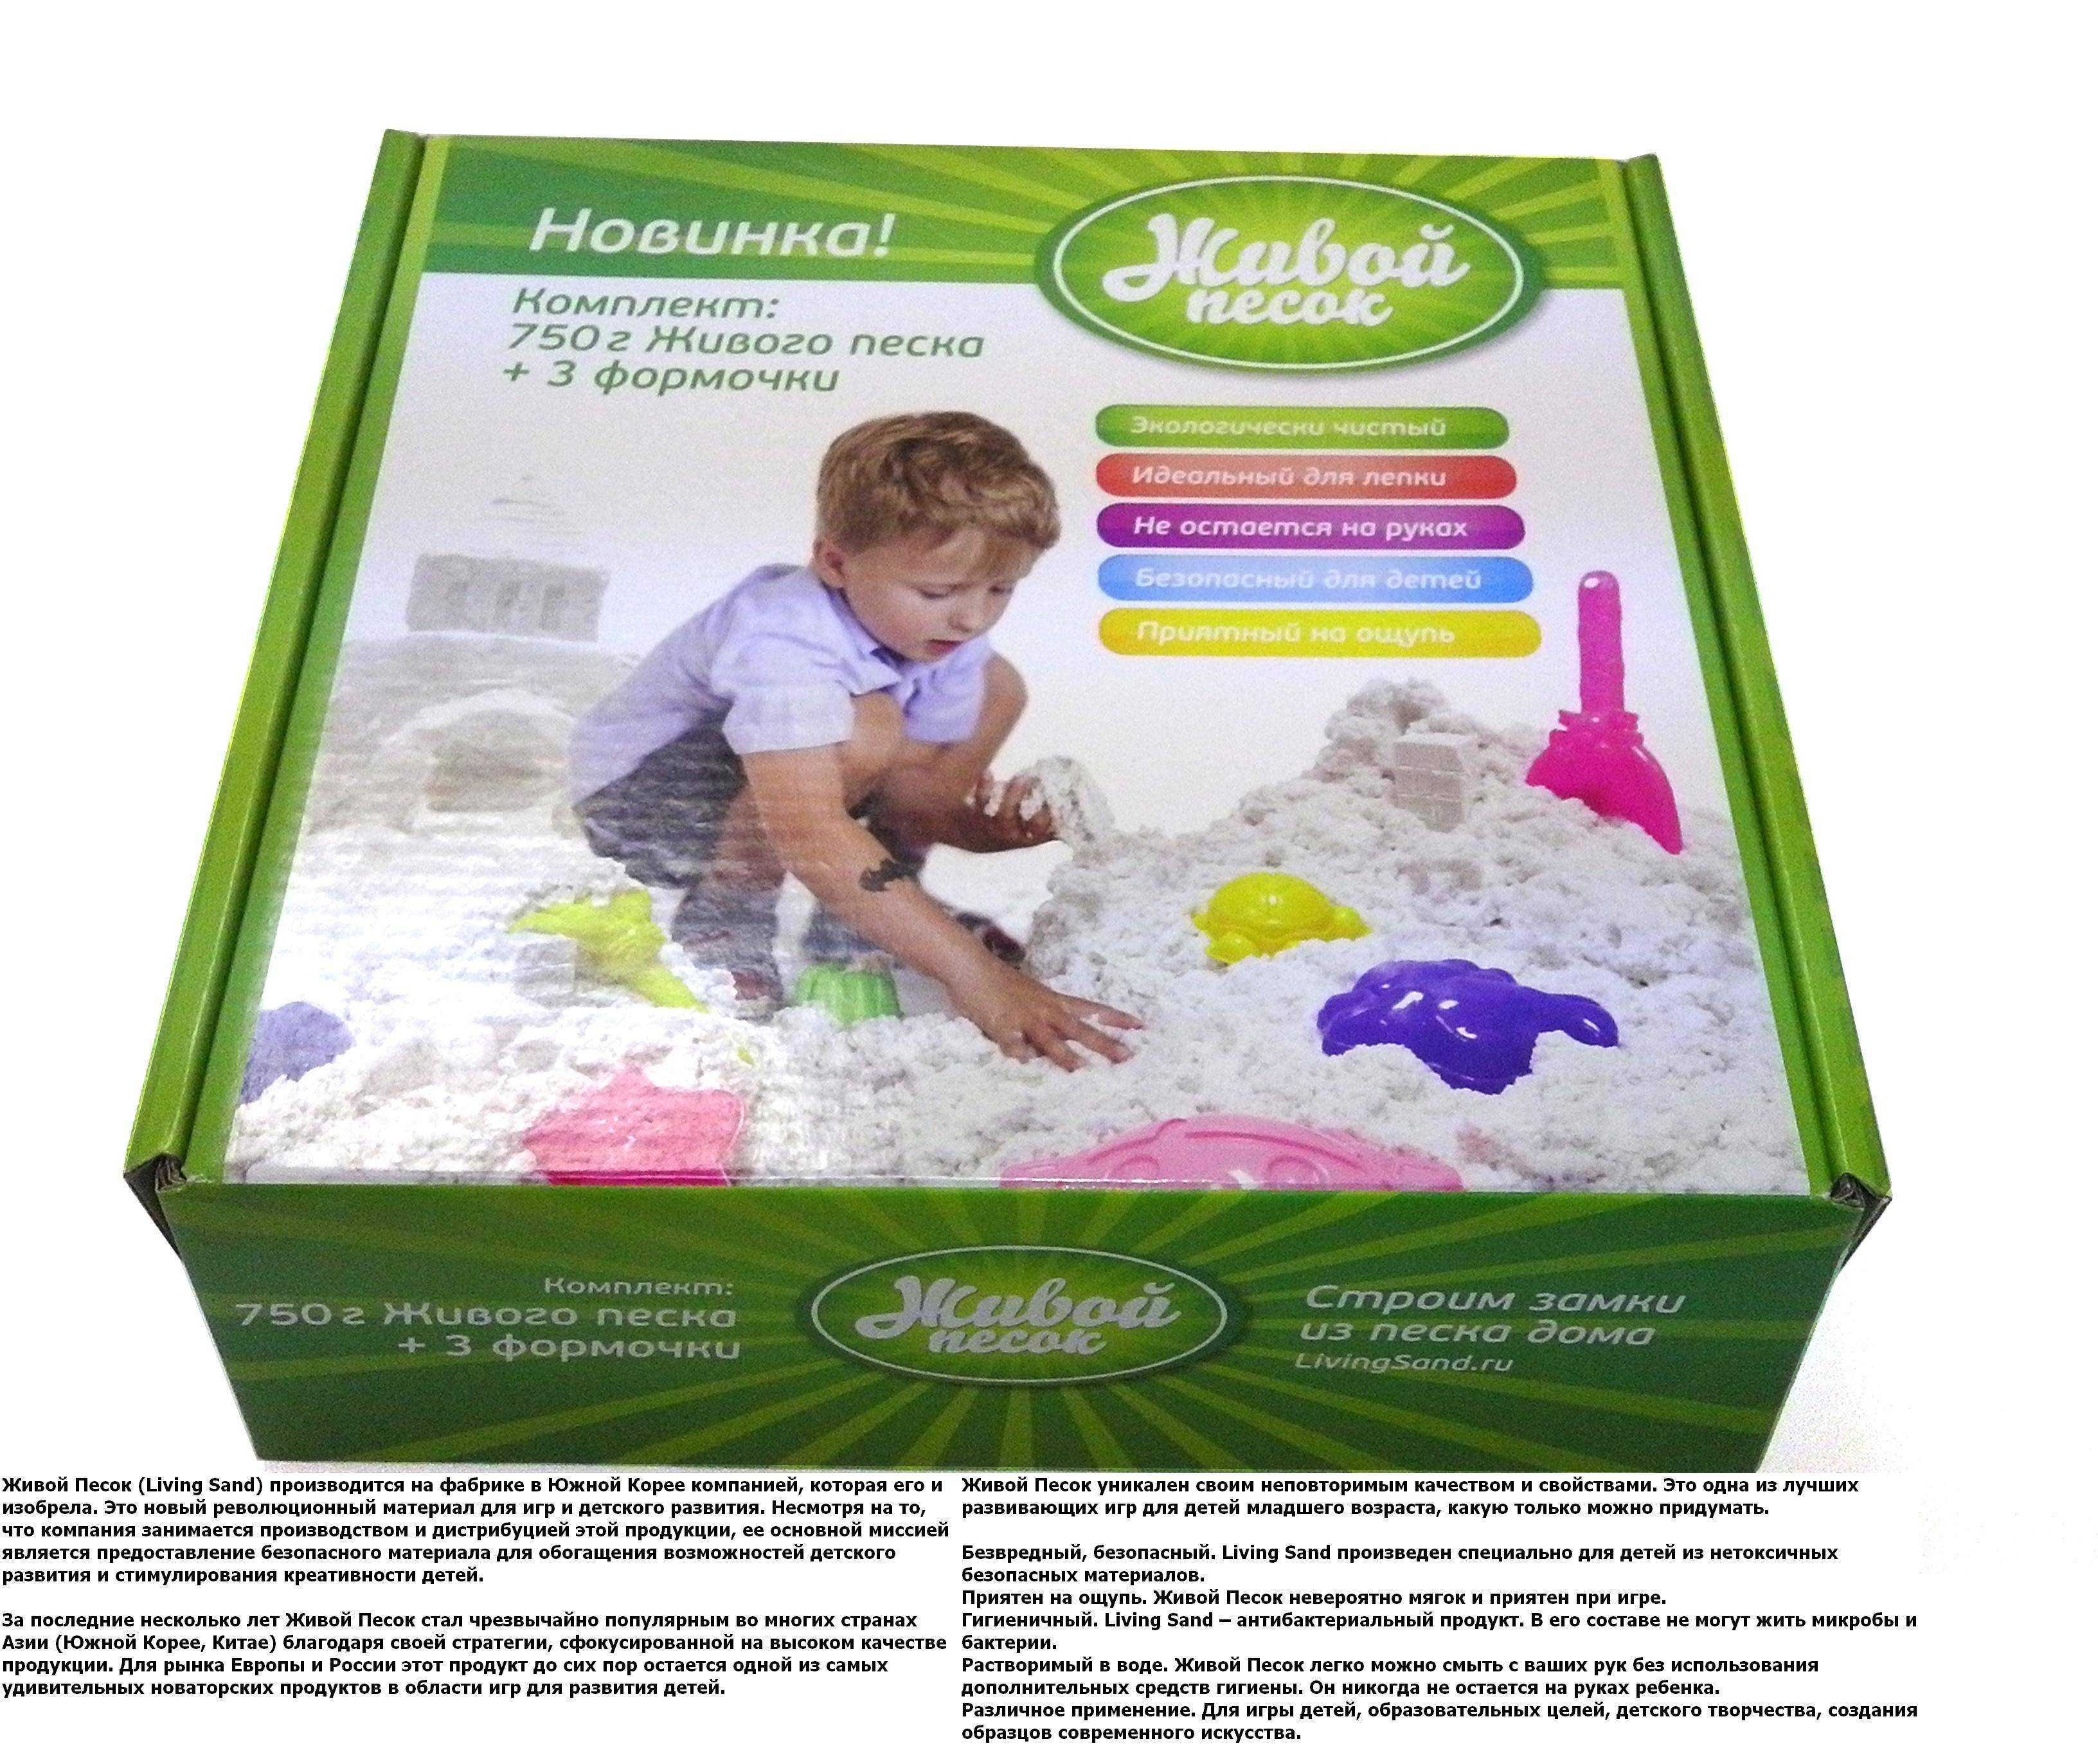 Как сделать кинетический песок в домашних условиях для ребенка